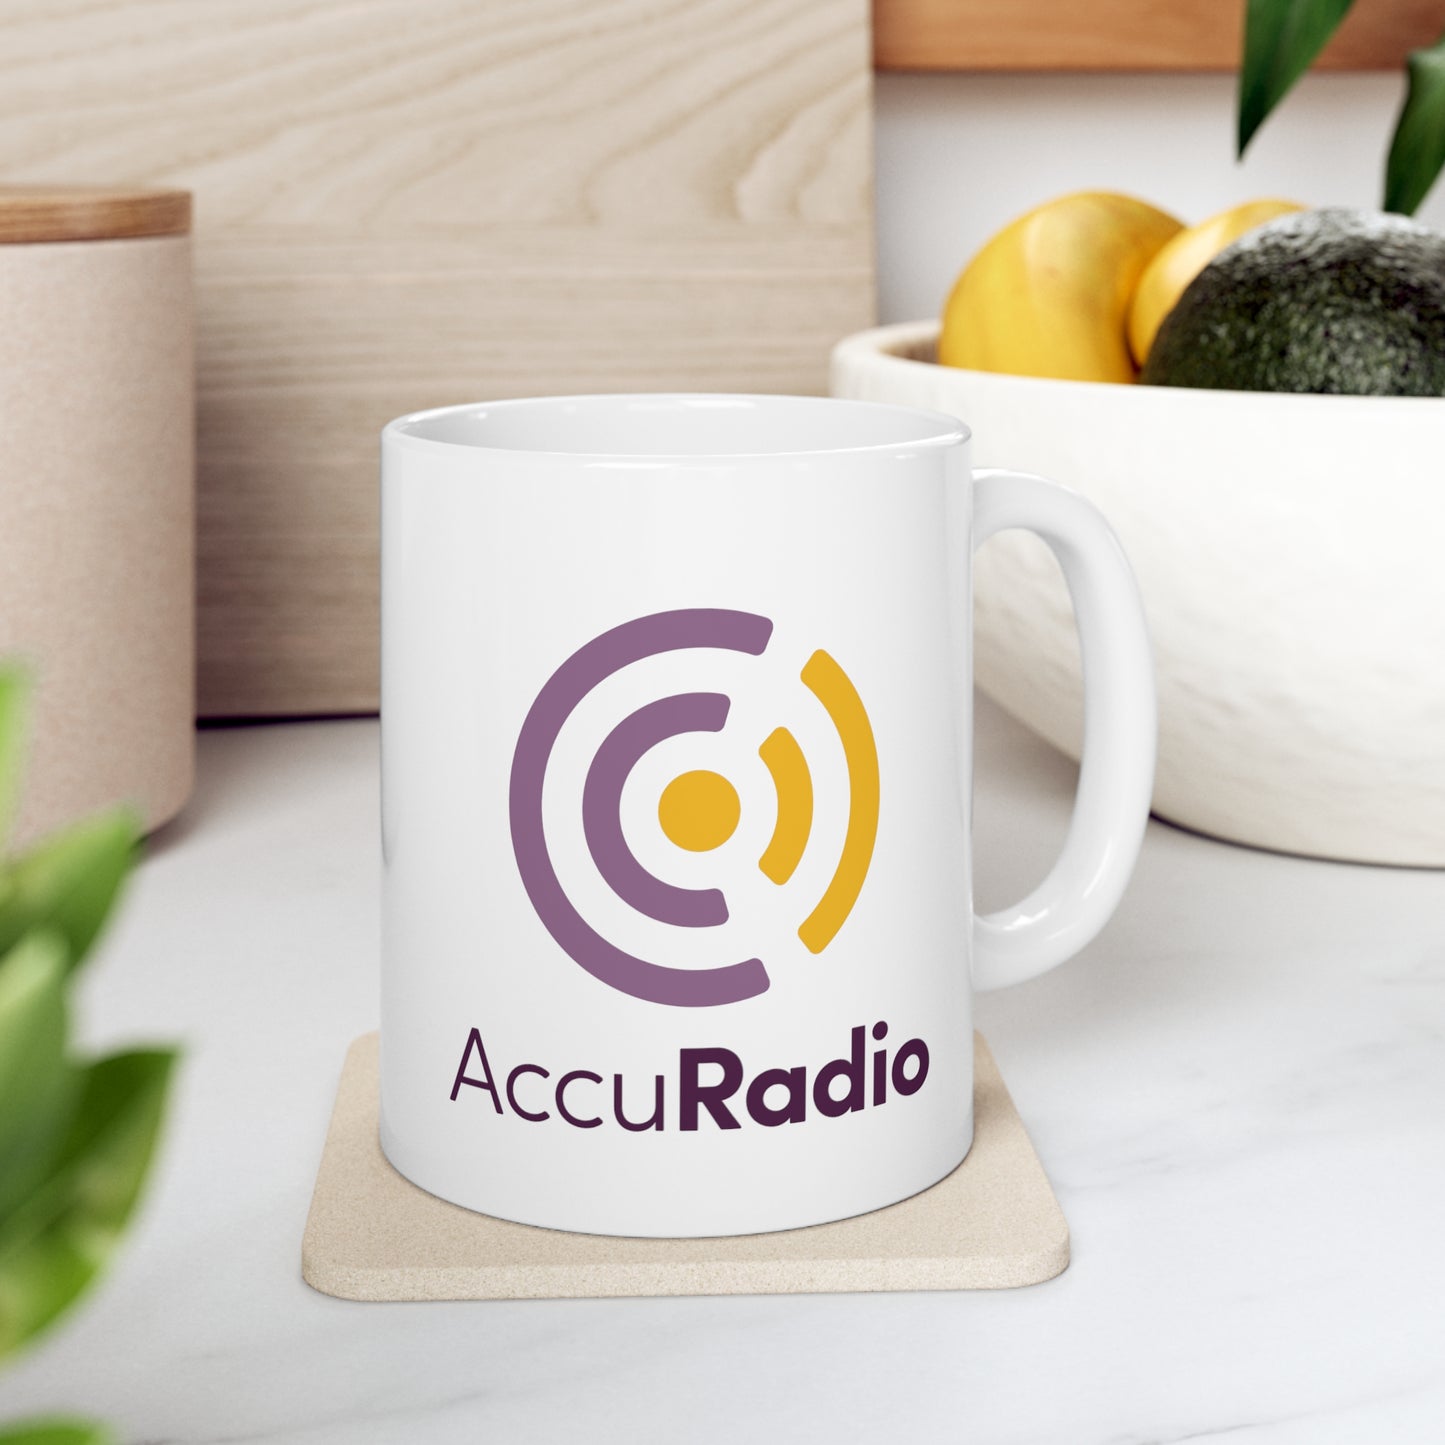 AccuRadio white ceramic mug